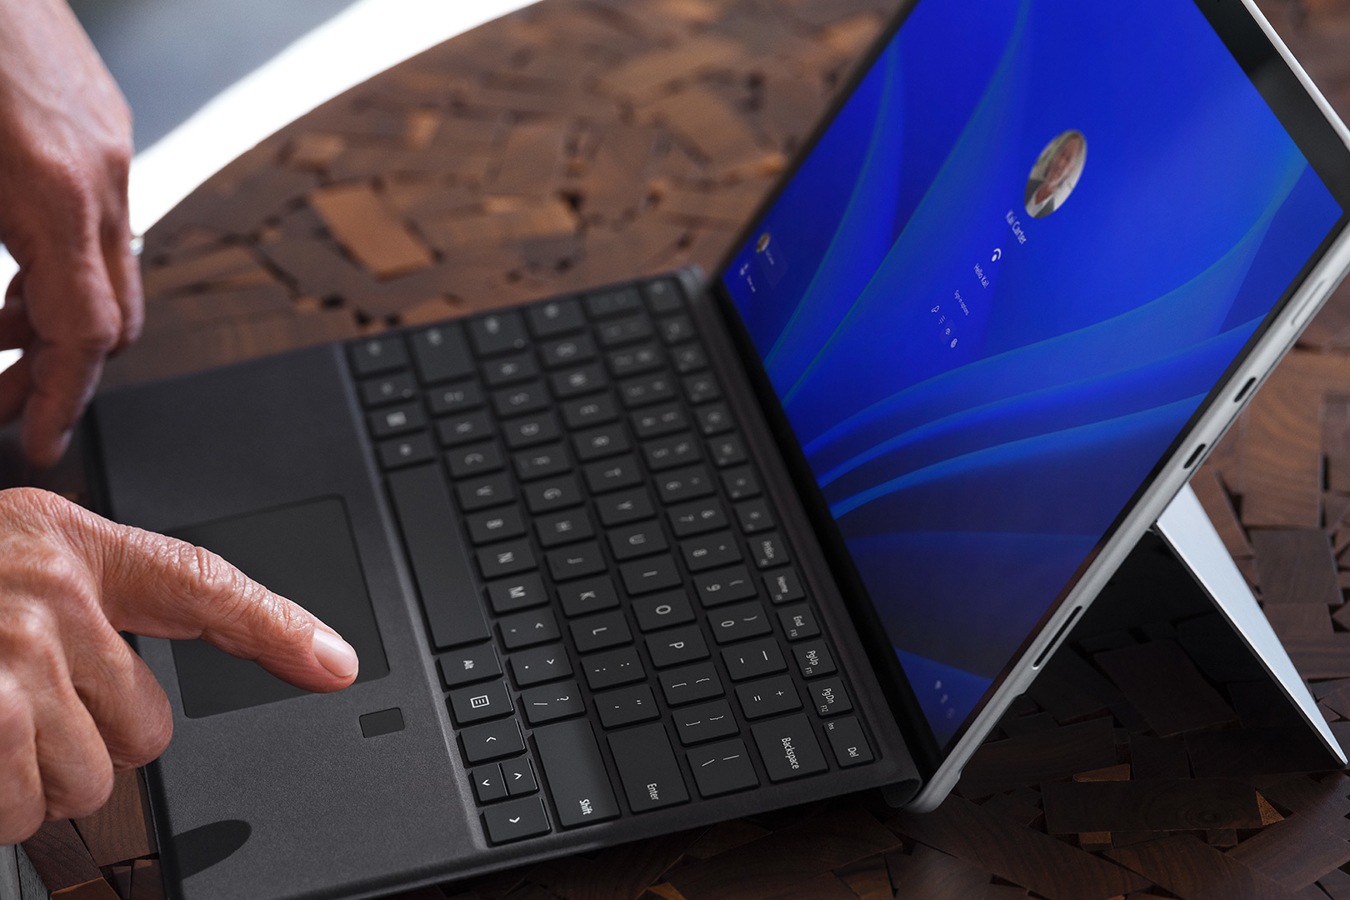 有人的手指停放在 Surface Pro Signature Keyboard 的生物特徵辨識登入功能上